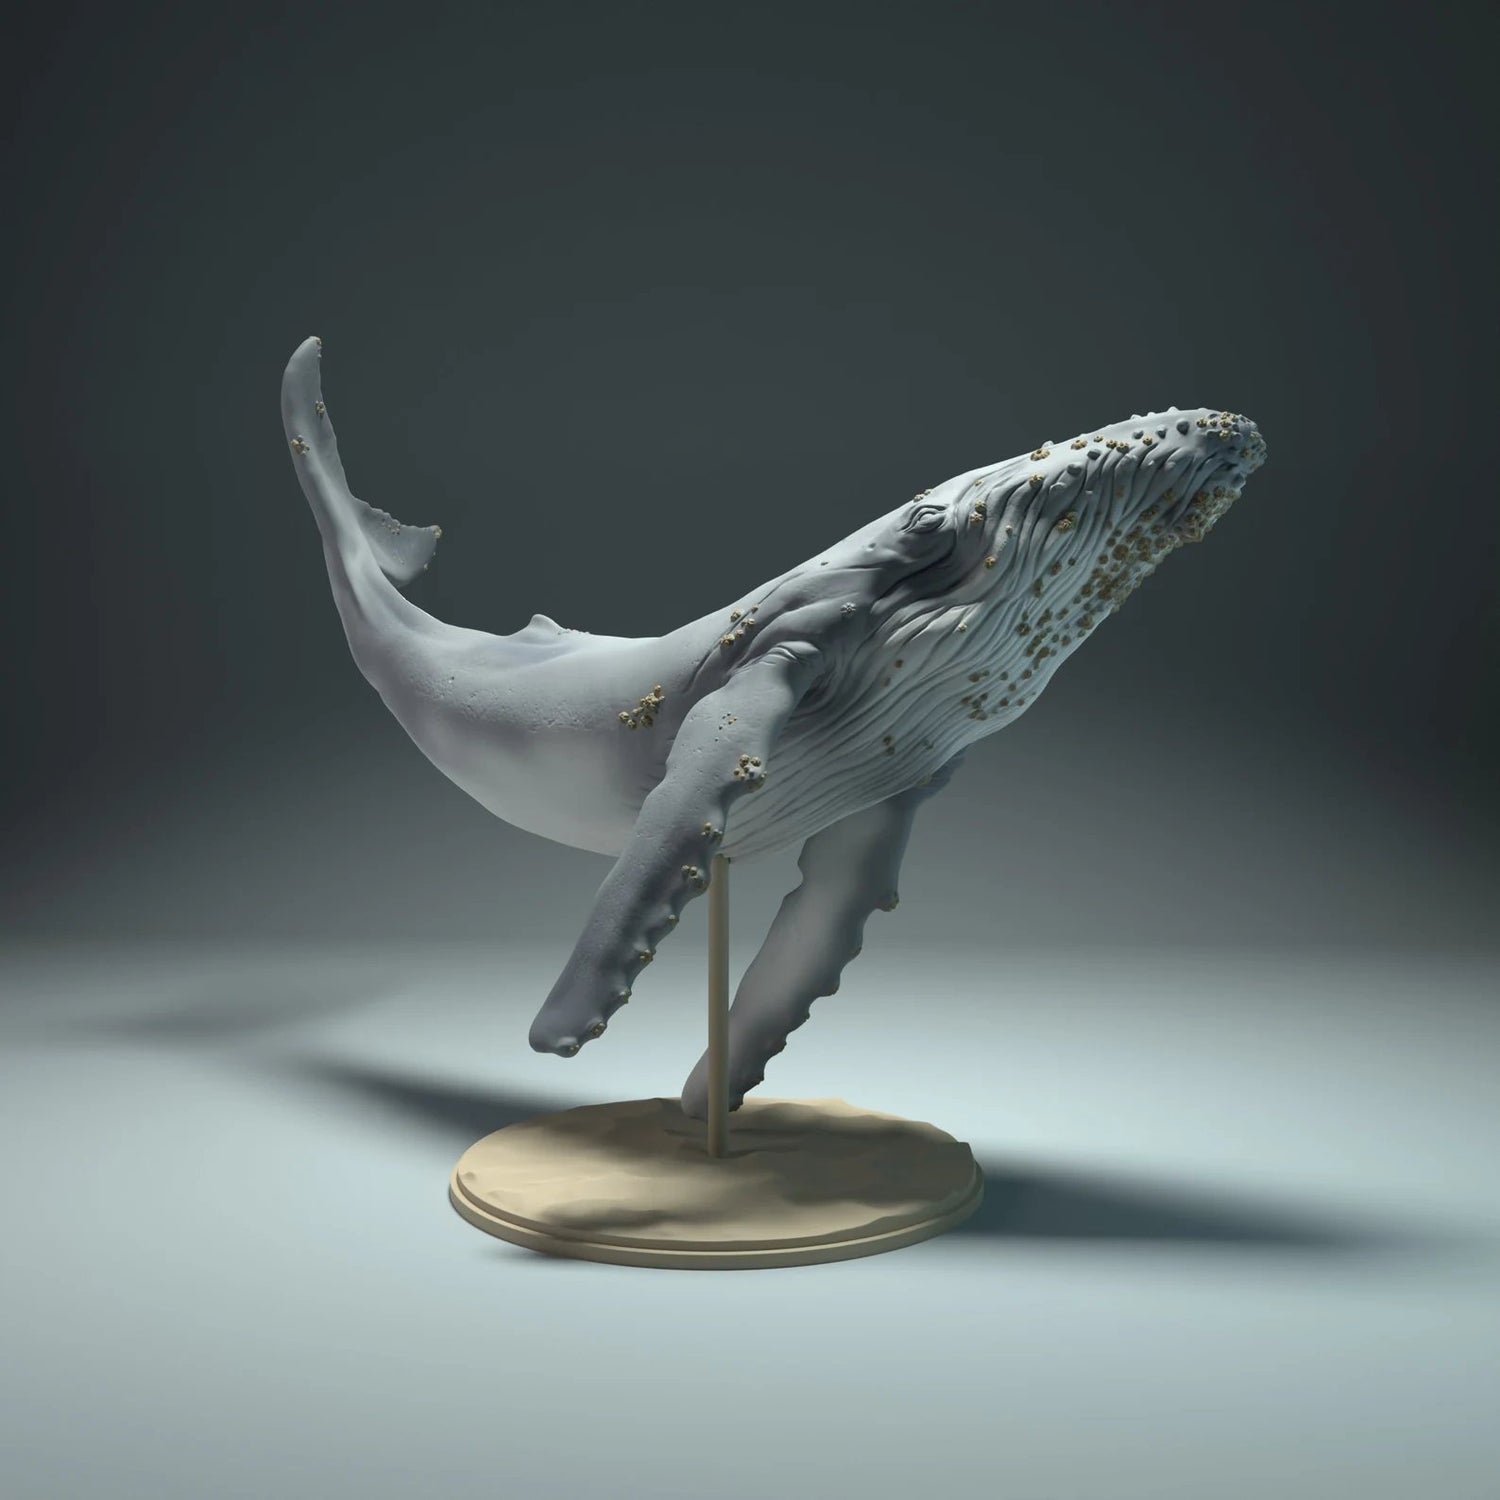 Kategorie-Bild mit Tier-Miniaturfigur für Ozean- und Meeresdiorama: Buckelwal